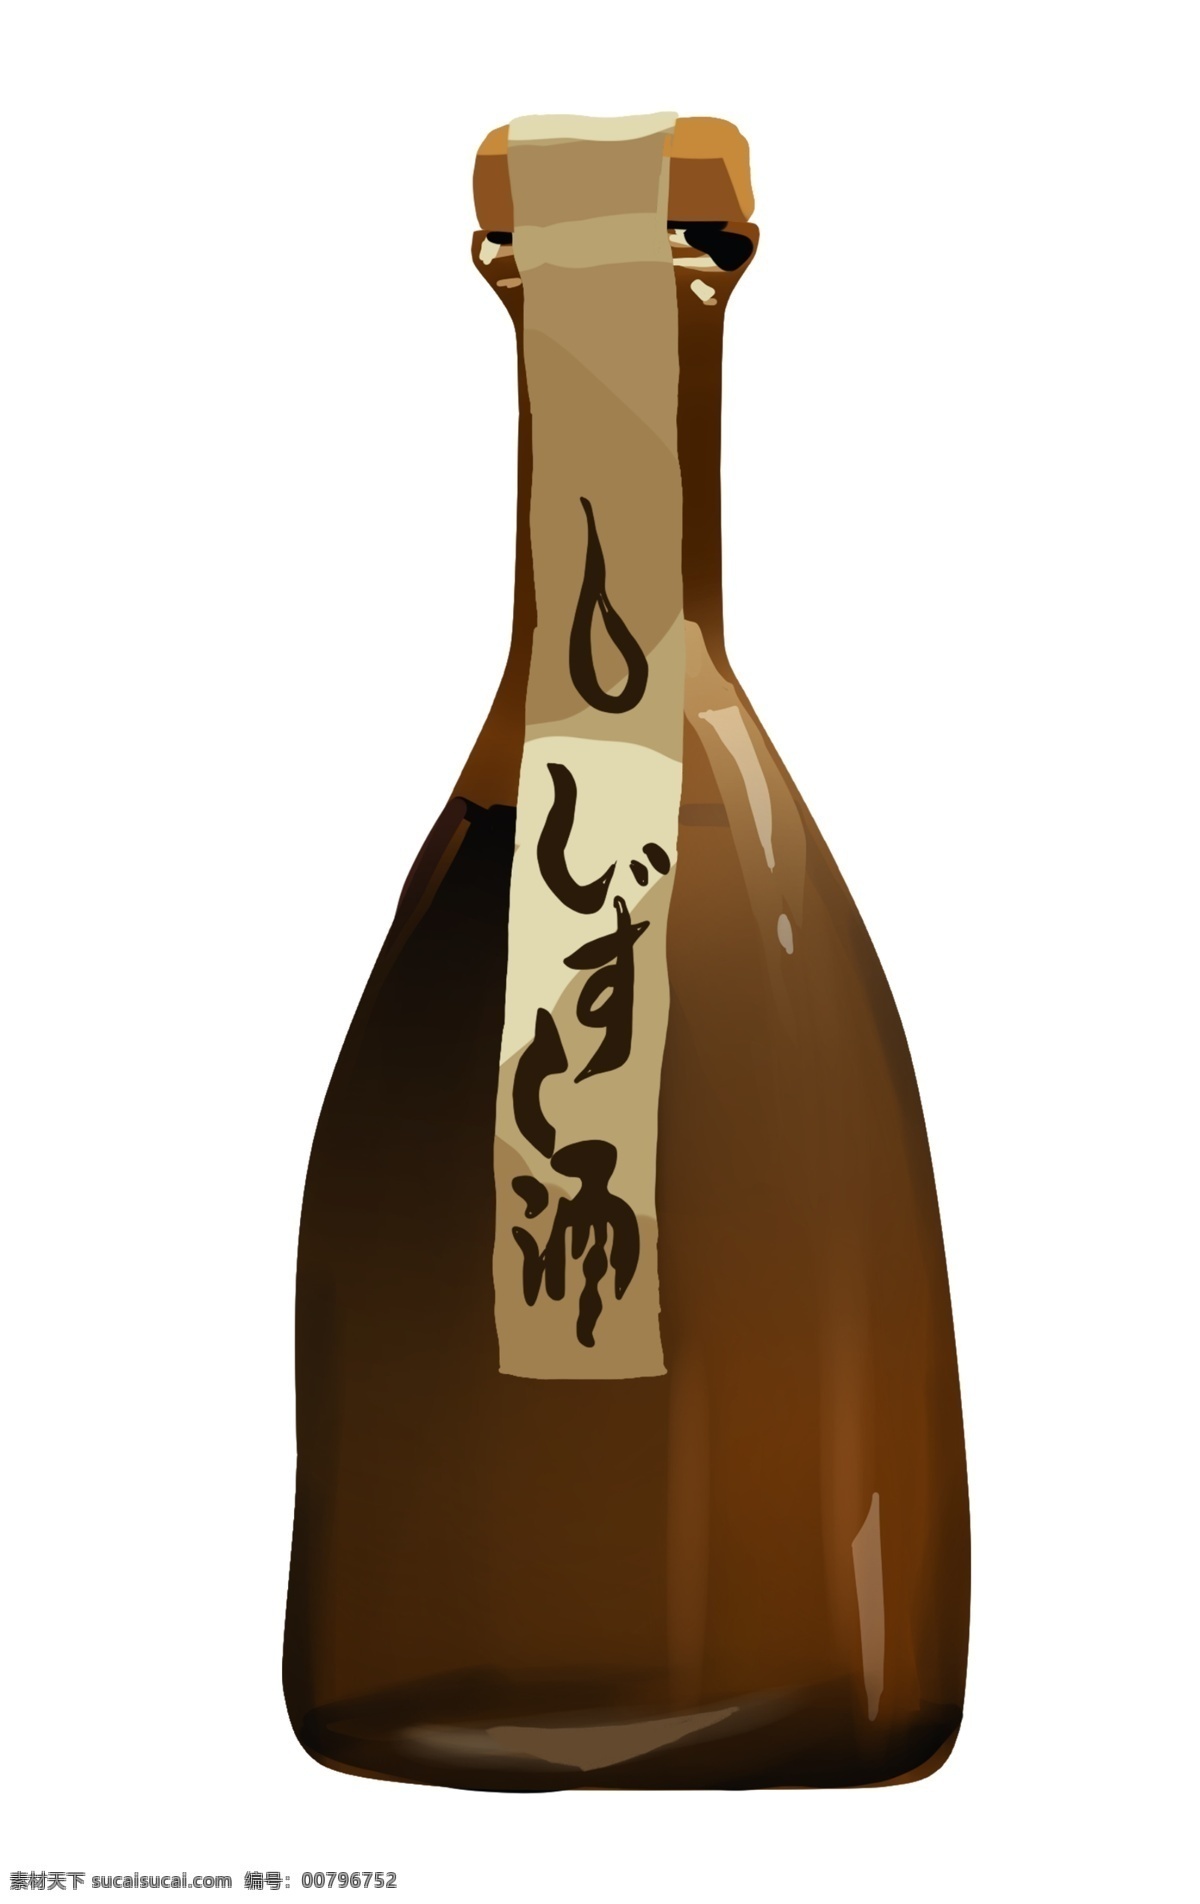 日本 特色 酒瓶 插画 瓷质的酒瓶 卡通插画 日本插画 日本物品 日本小物 日本风情 白色的标签